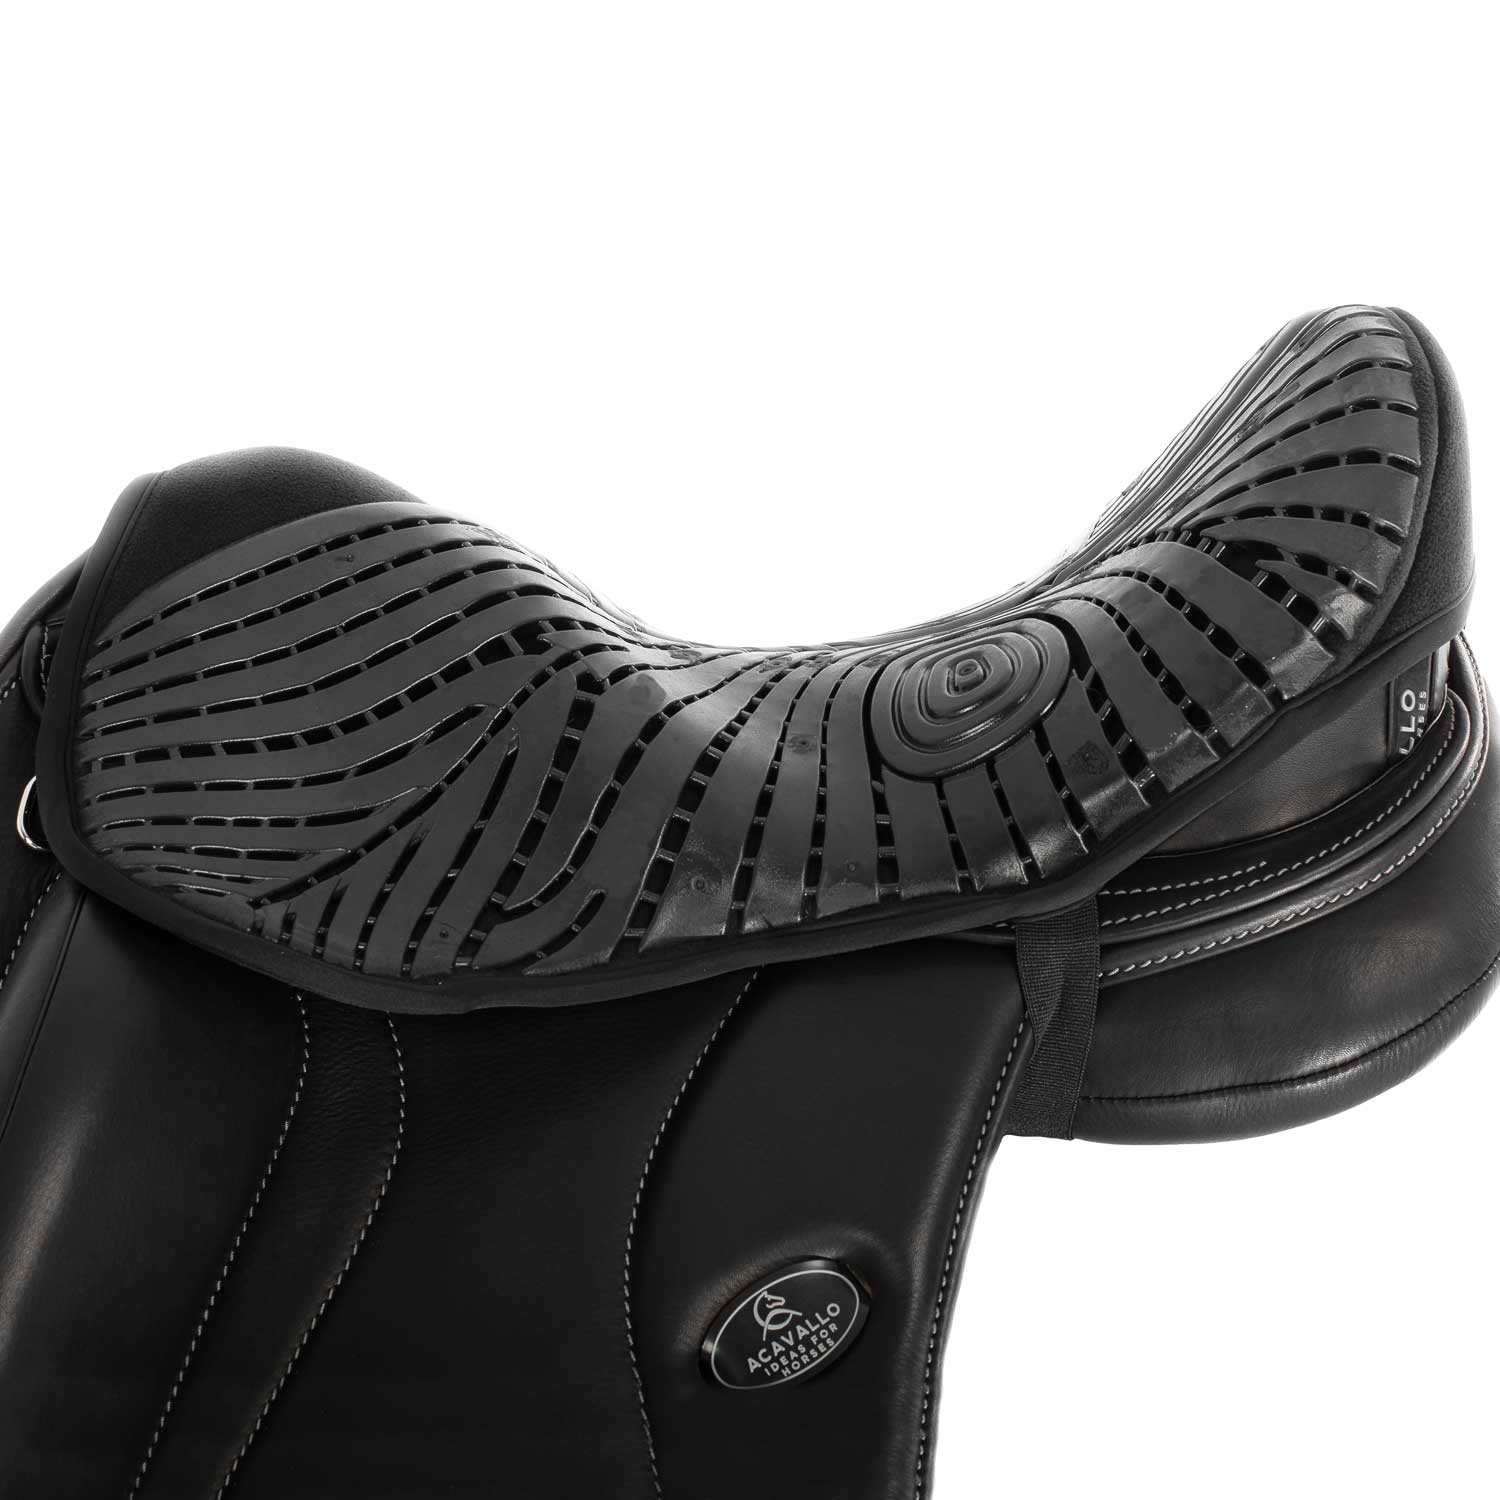 Sitz Bezug Dressage seat saver Dri-lex 10mm Air Plus gel out - Reitstiefel Kandel - Dein Reitshop